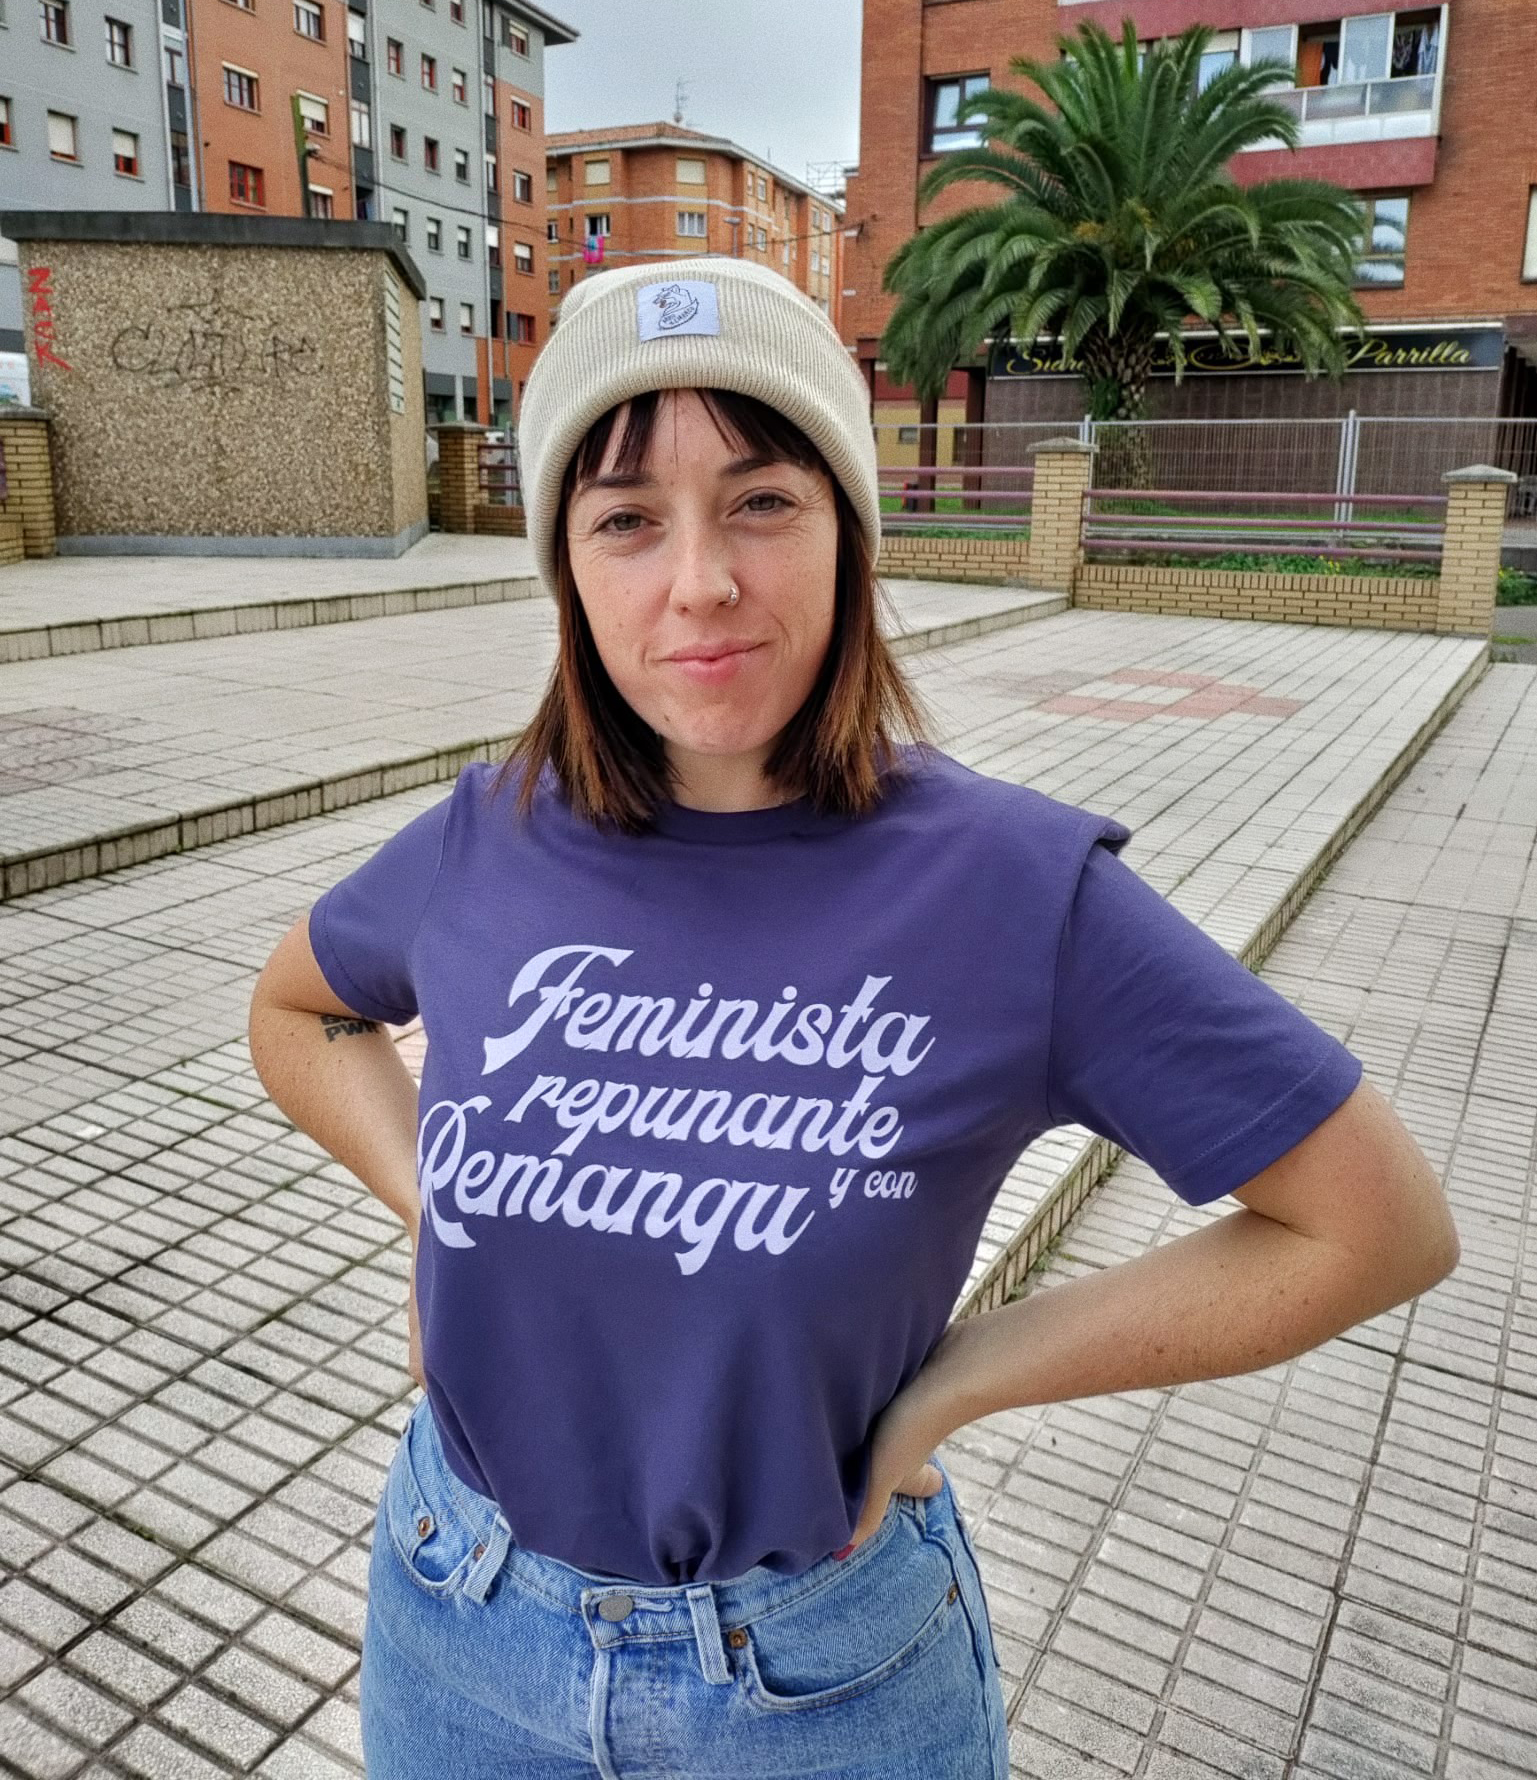 Camiseta feminista, repunante con remangu Puru Remangu